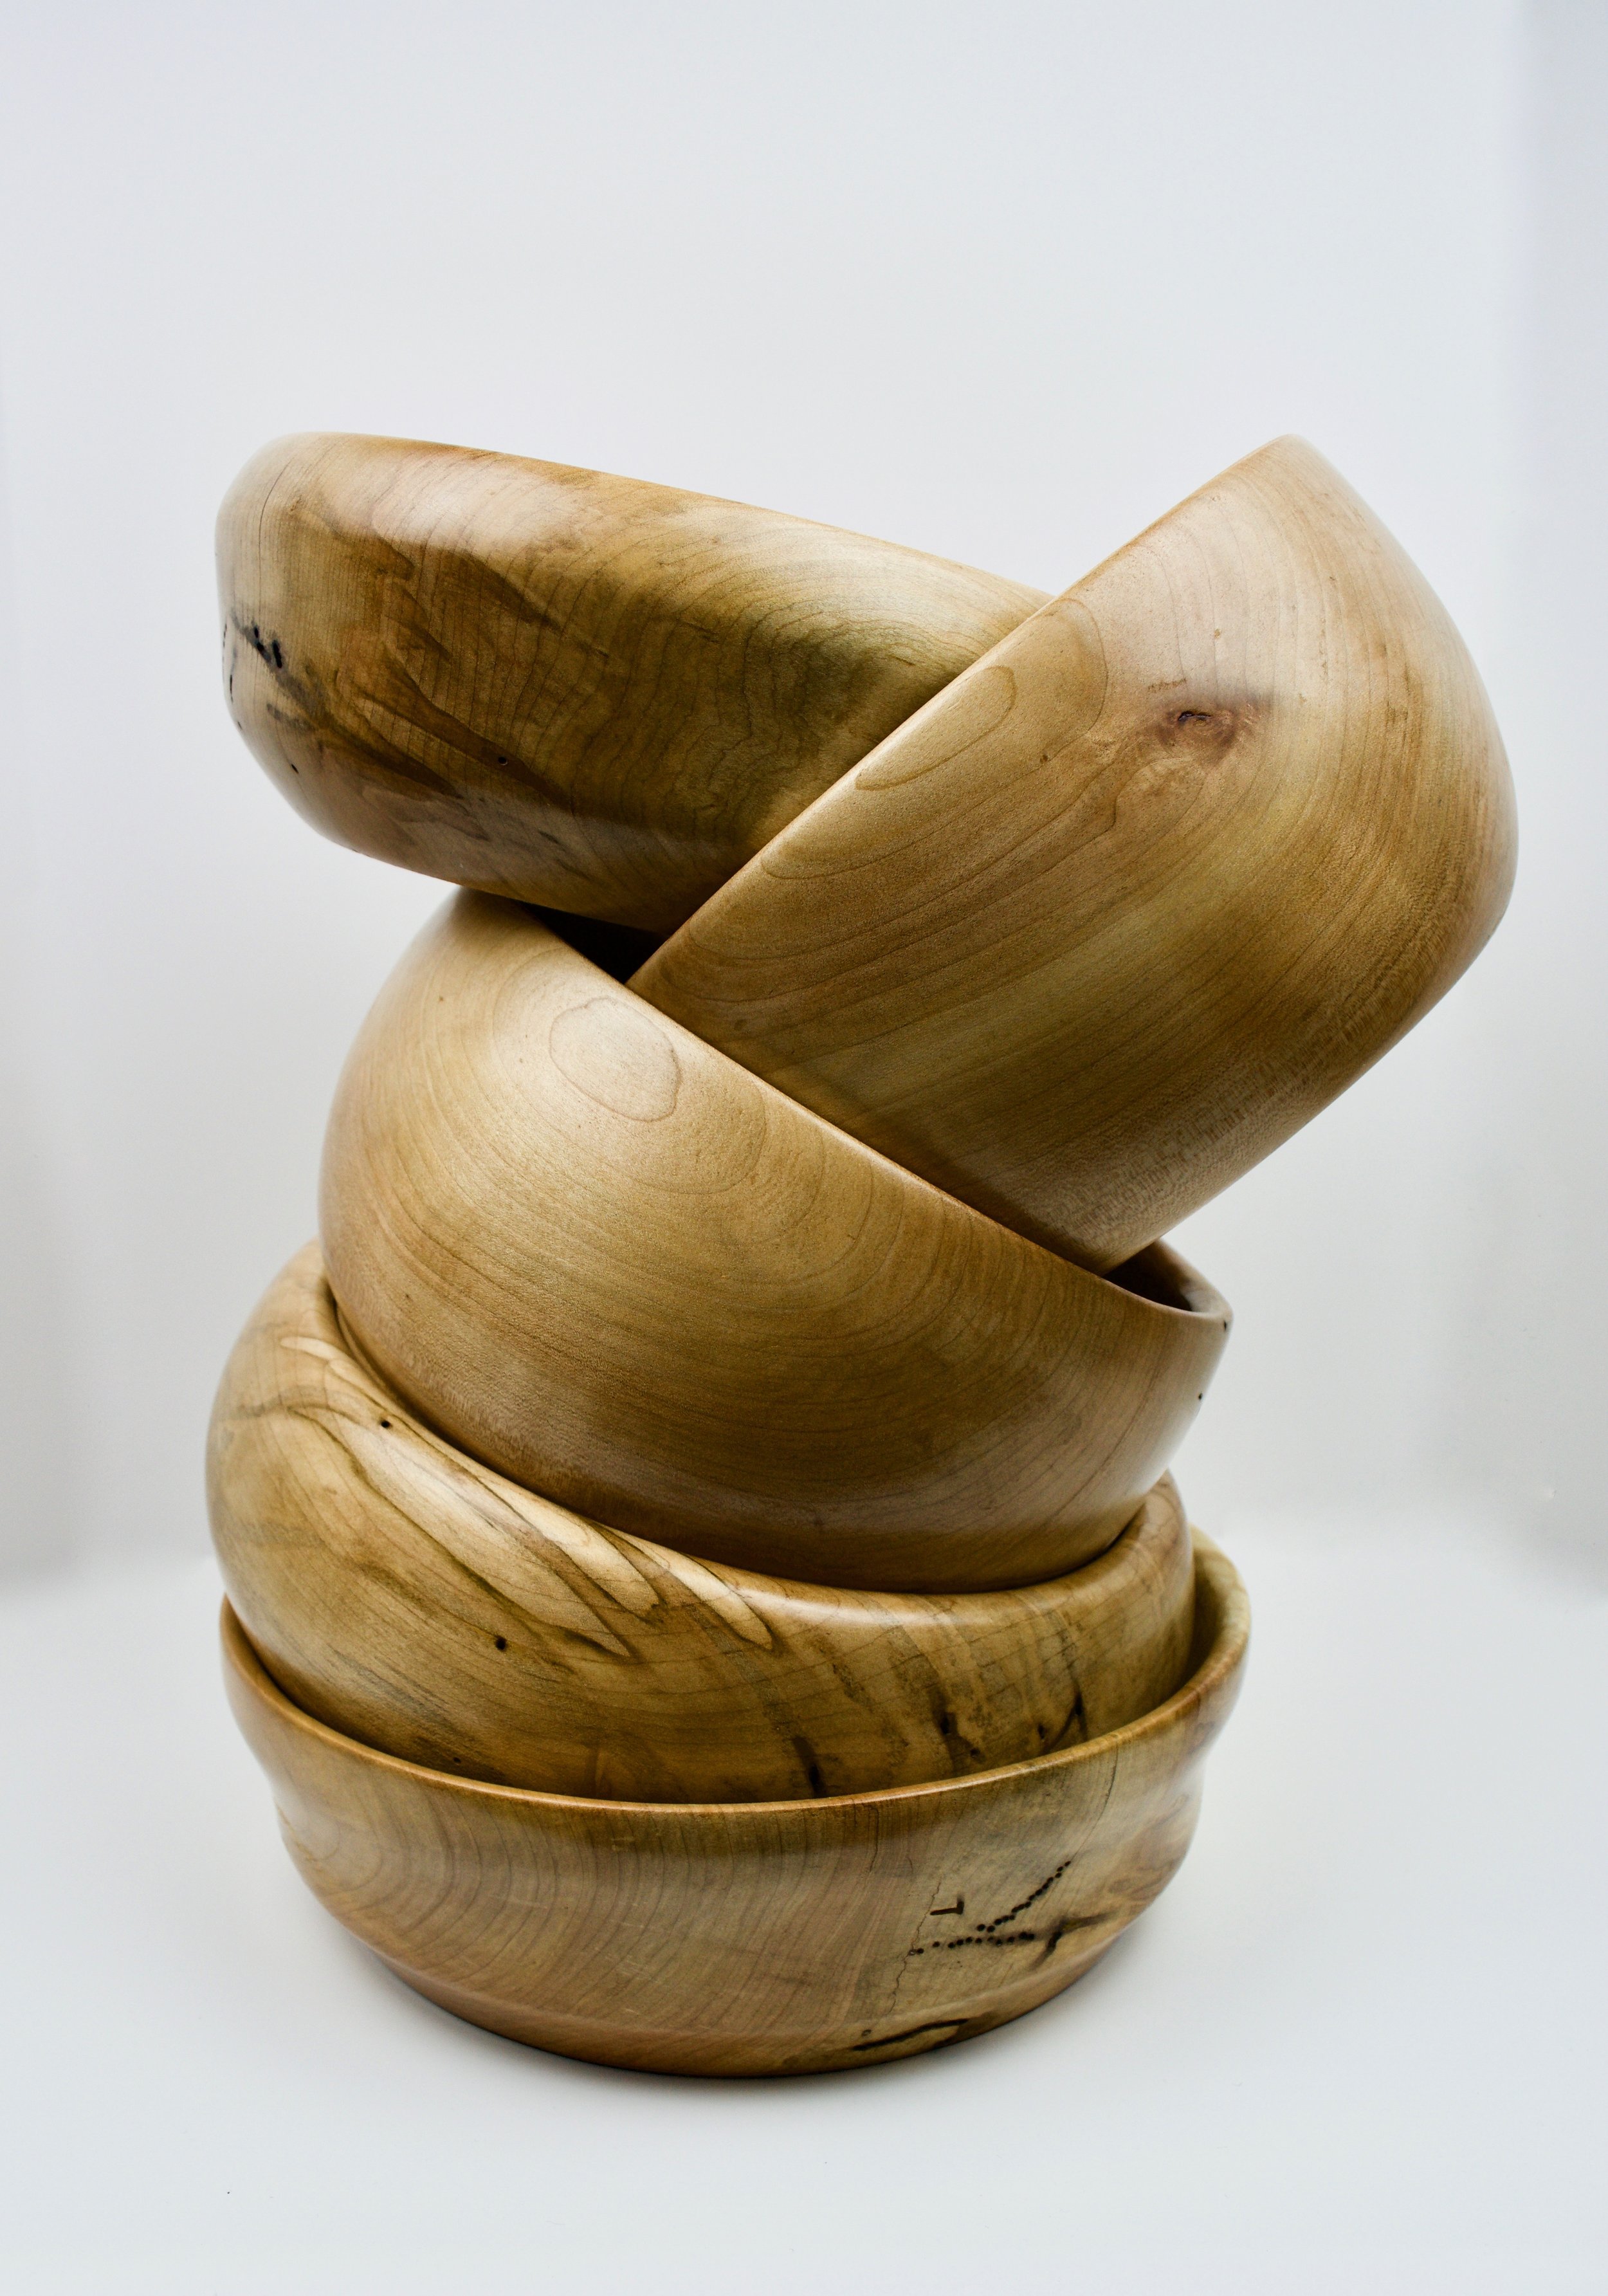 Wood Turned Bowls - Ambrosia Maple